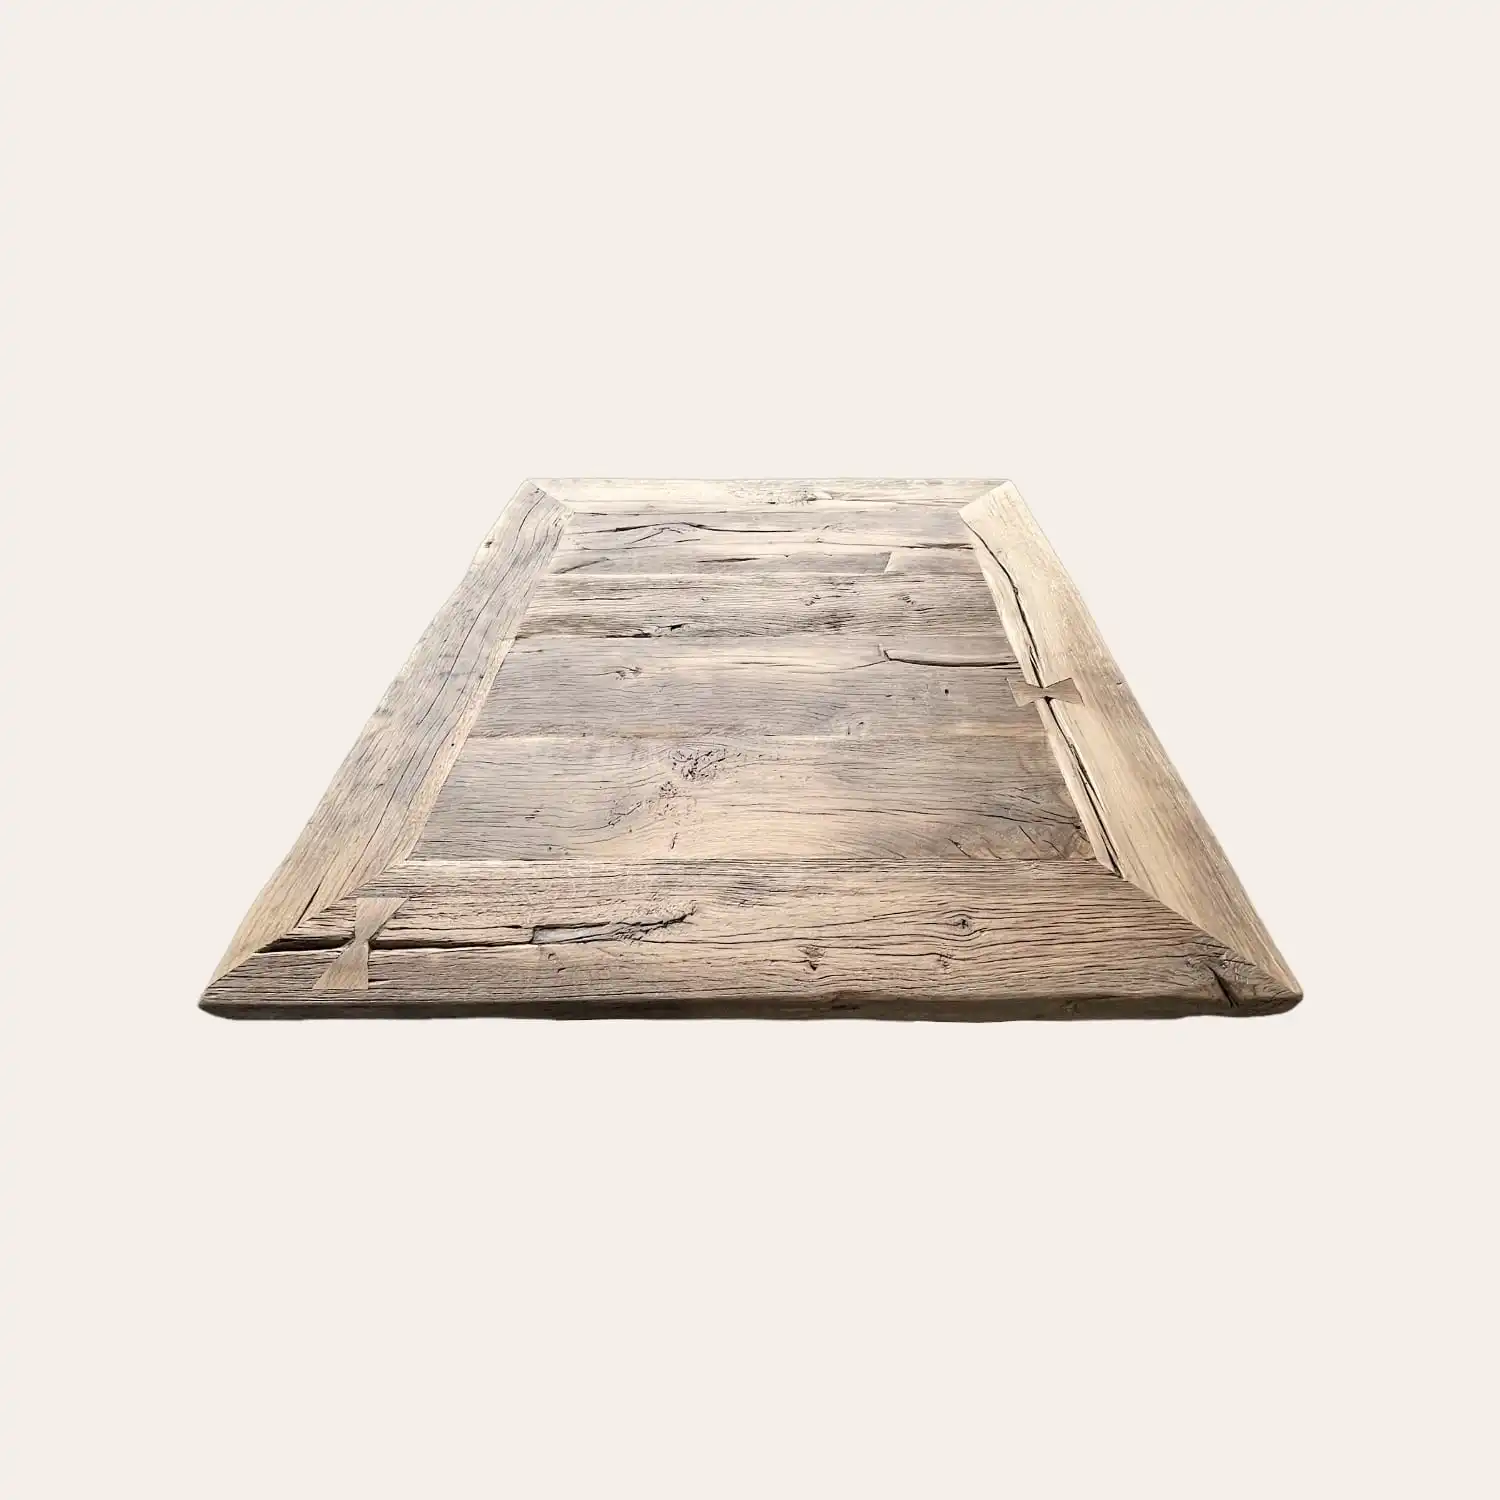  Vue de dessus d'une table de style fermette aux larges planches de bois ancien. Le bois présente une patine naturelle avec des textures profondes, des nœuds apparents, des fissures et des marques d'usure qui racontent l'histoire du matériau. 